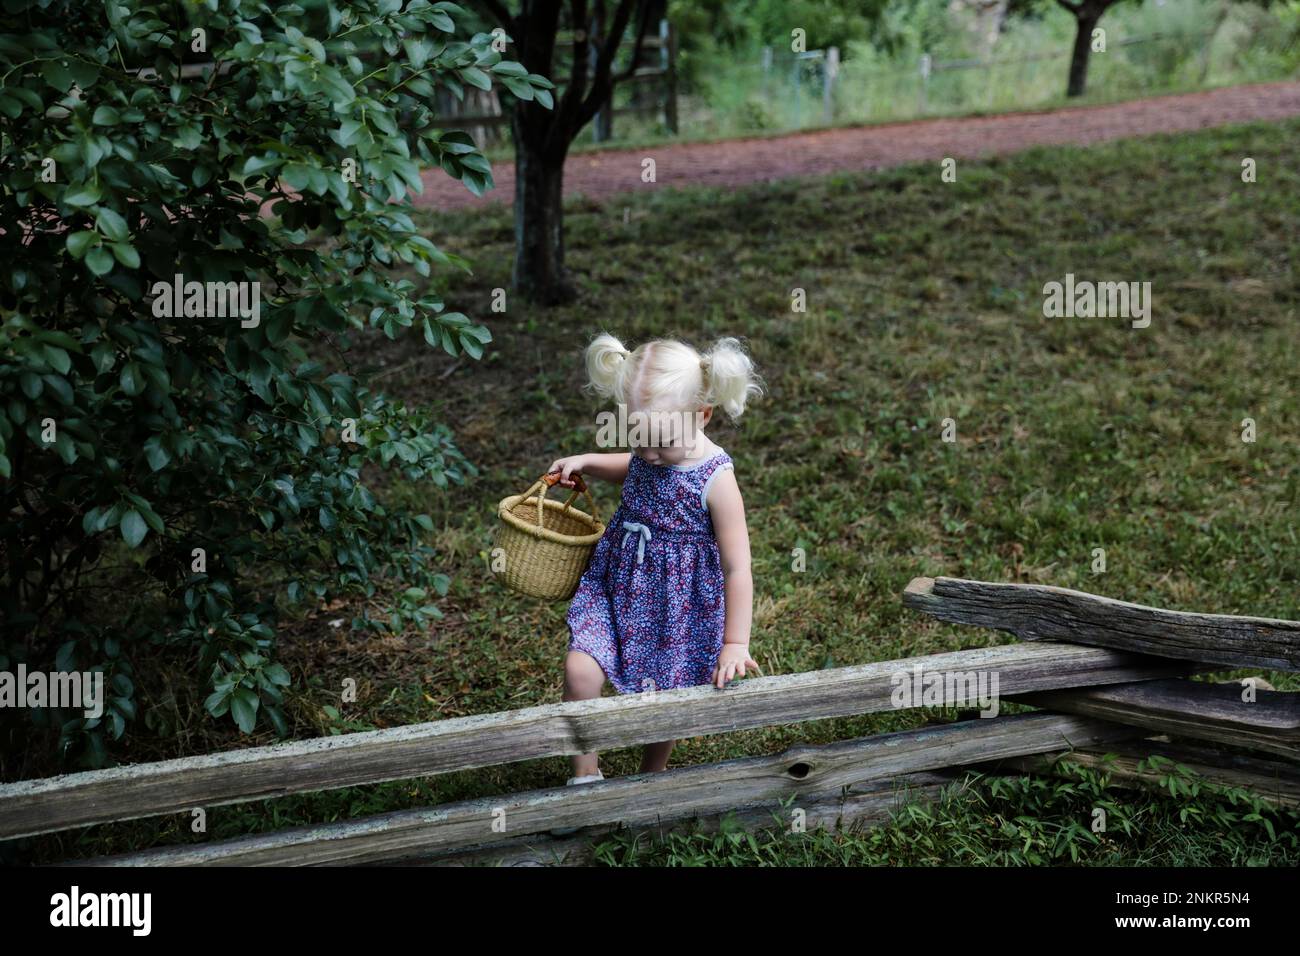 Jeune fille aux cheveux blonds portant un panier en osier et grimpant sur une clôture en bois Banque D'Images